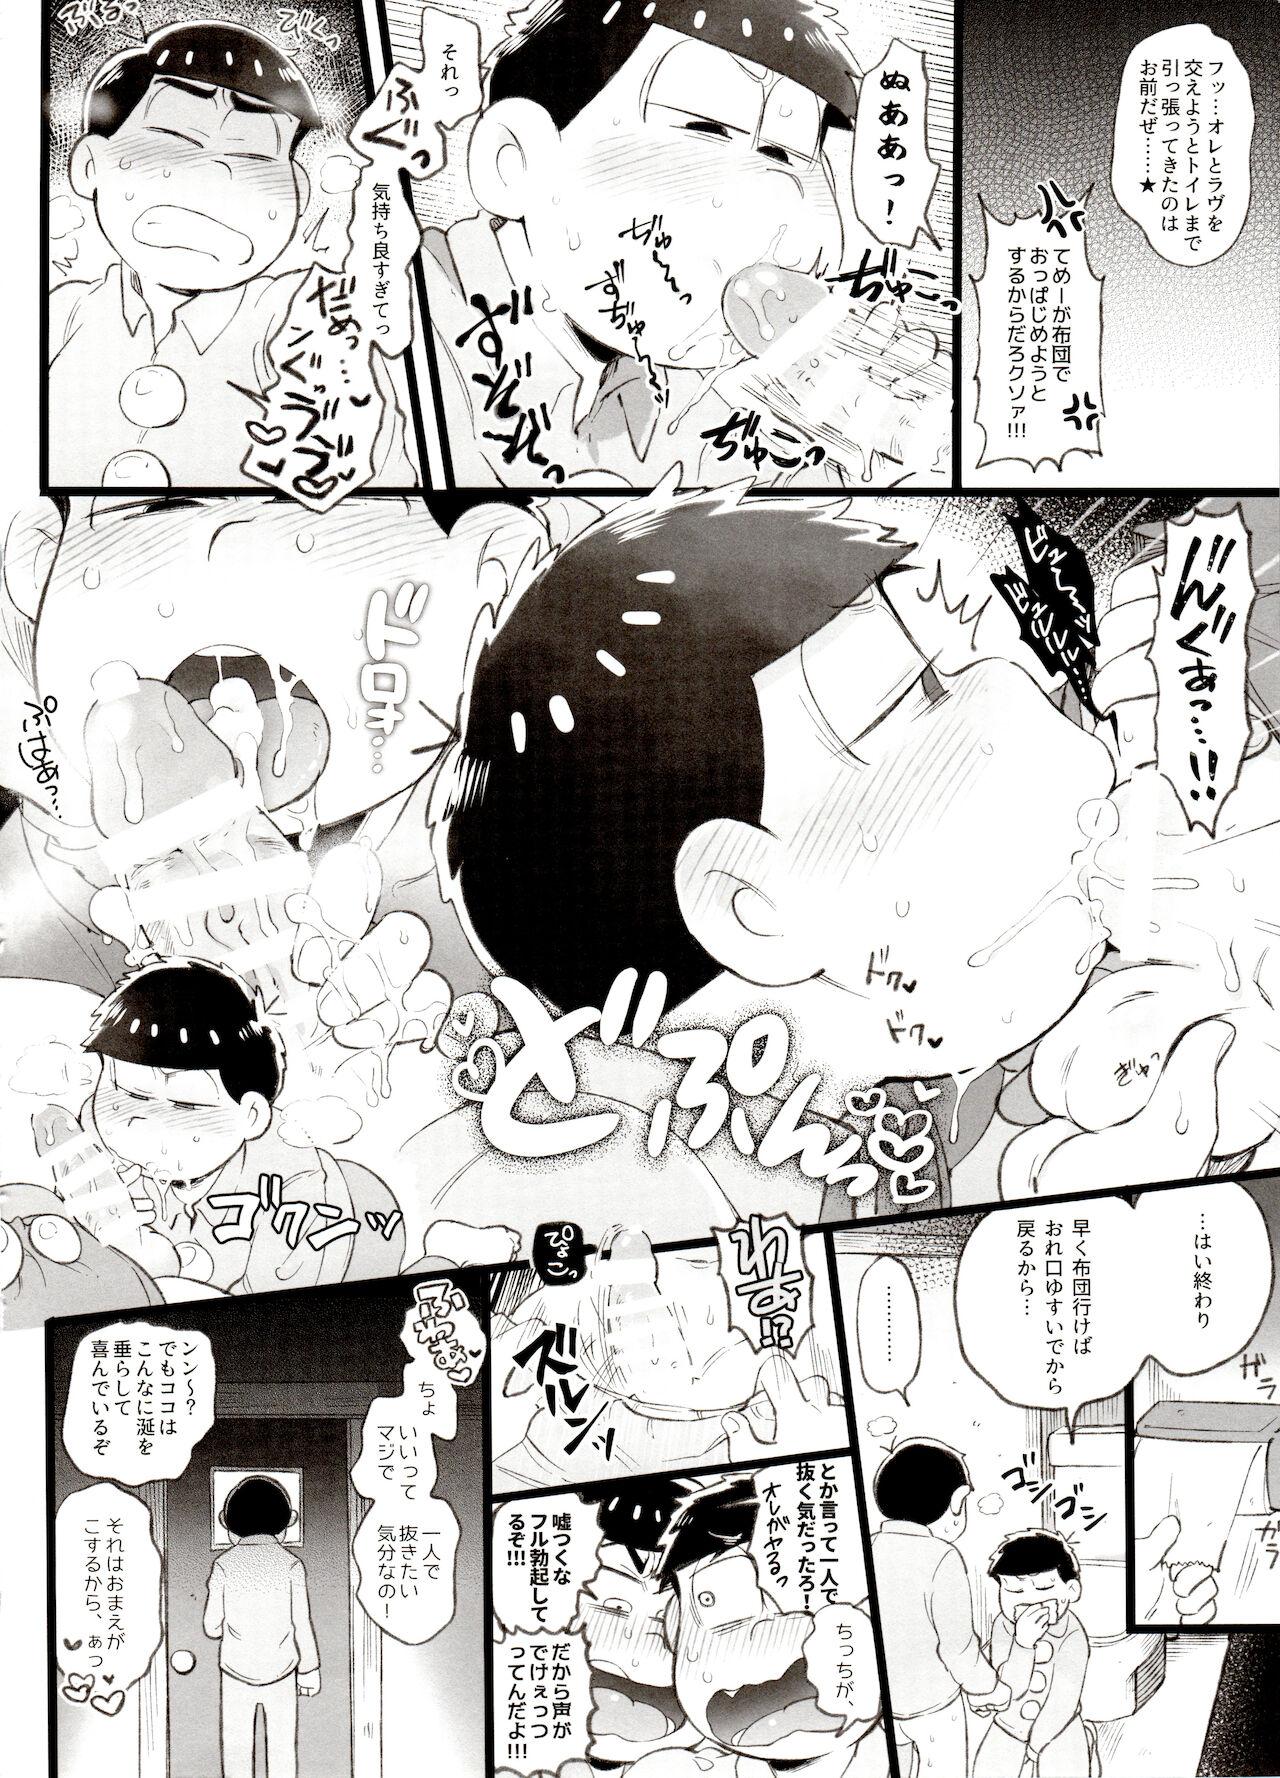 Cums Kahou 10-ji Yon no Omake Hon + Andante no Koufukuron Gojitsu Manga - Osomatsu-san Turkish - Picture 3